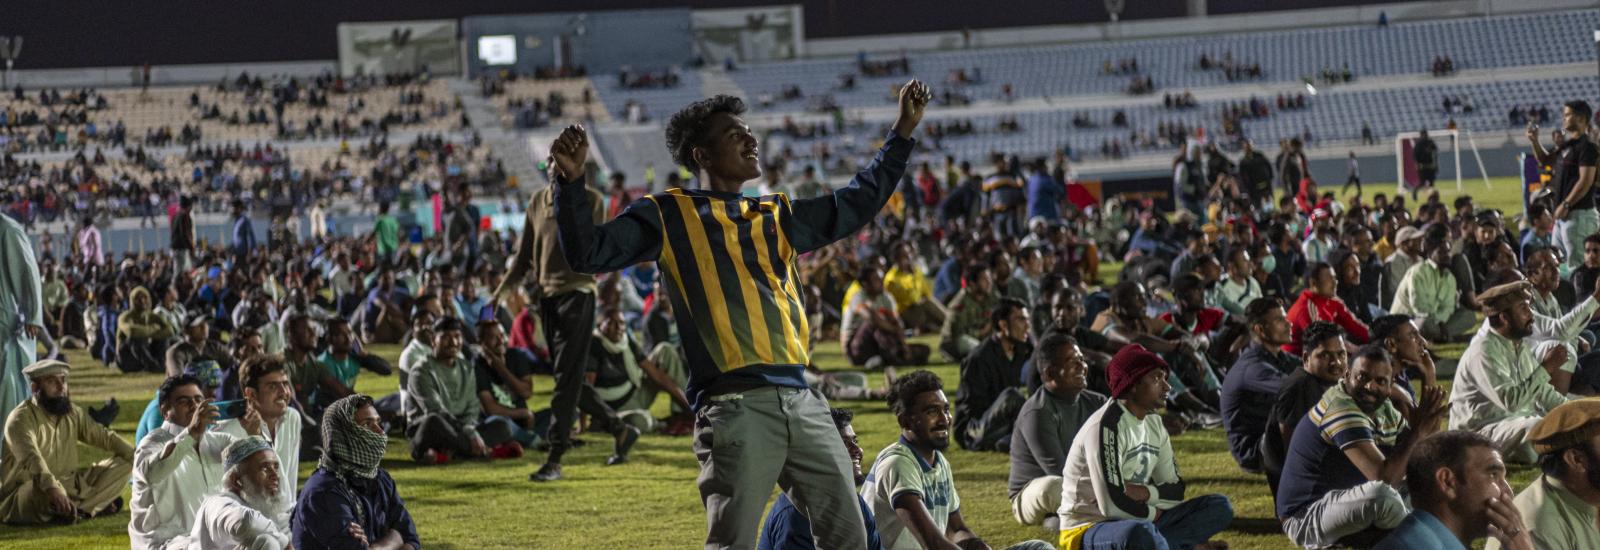 Trabalhadores migrantes a verem um jogo do Mundial do Catar